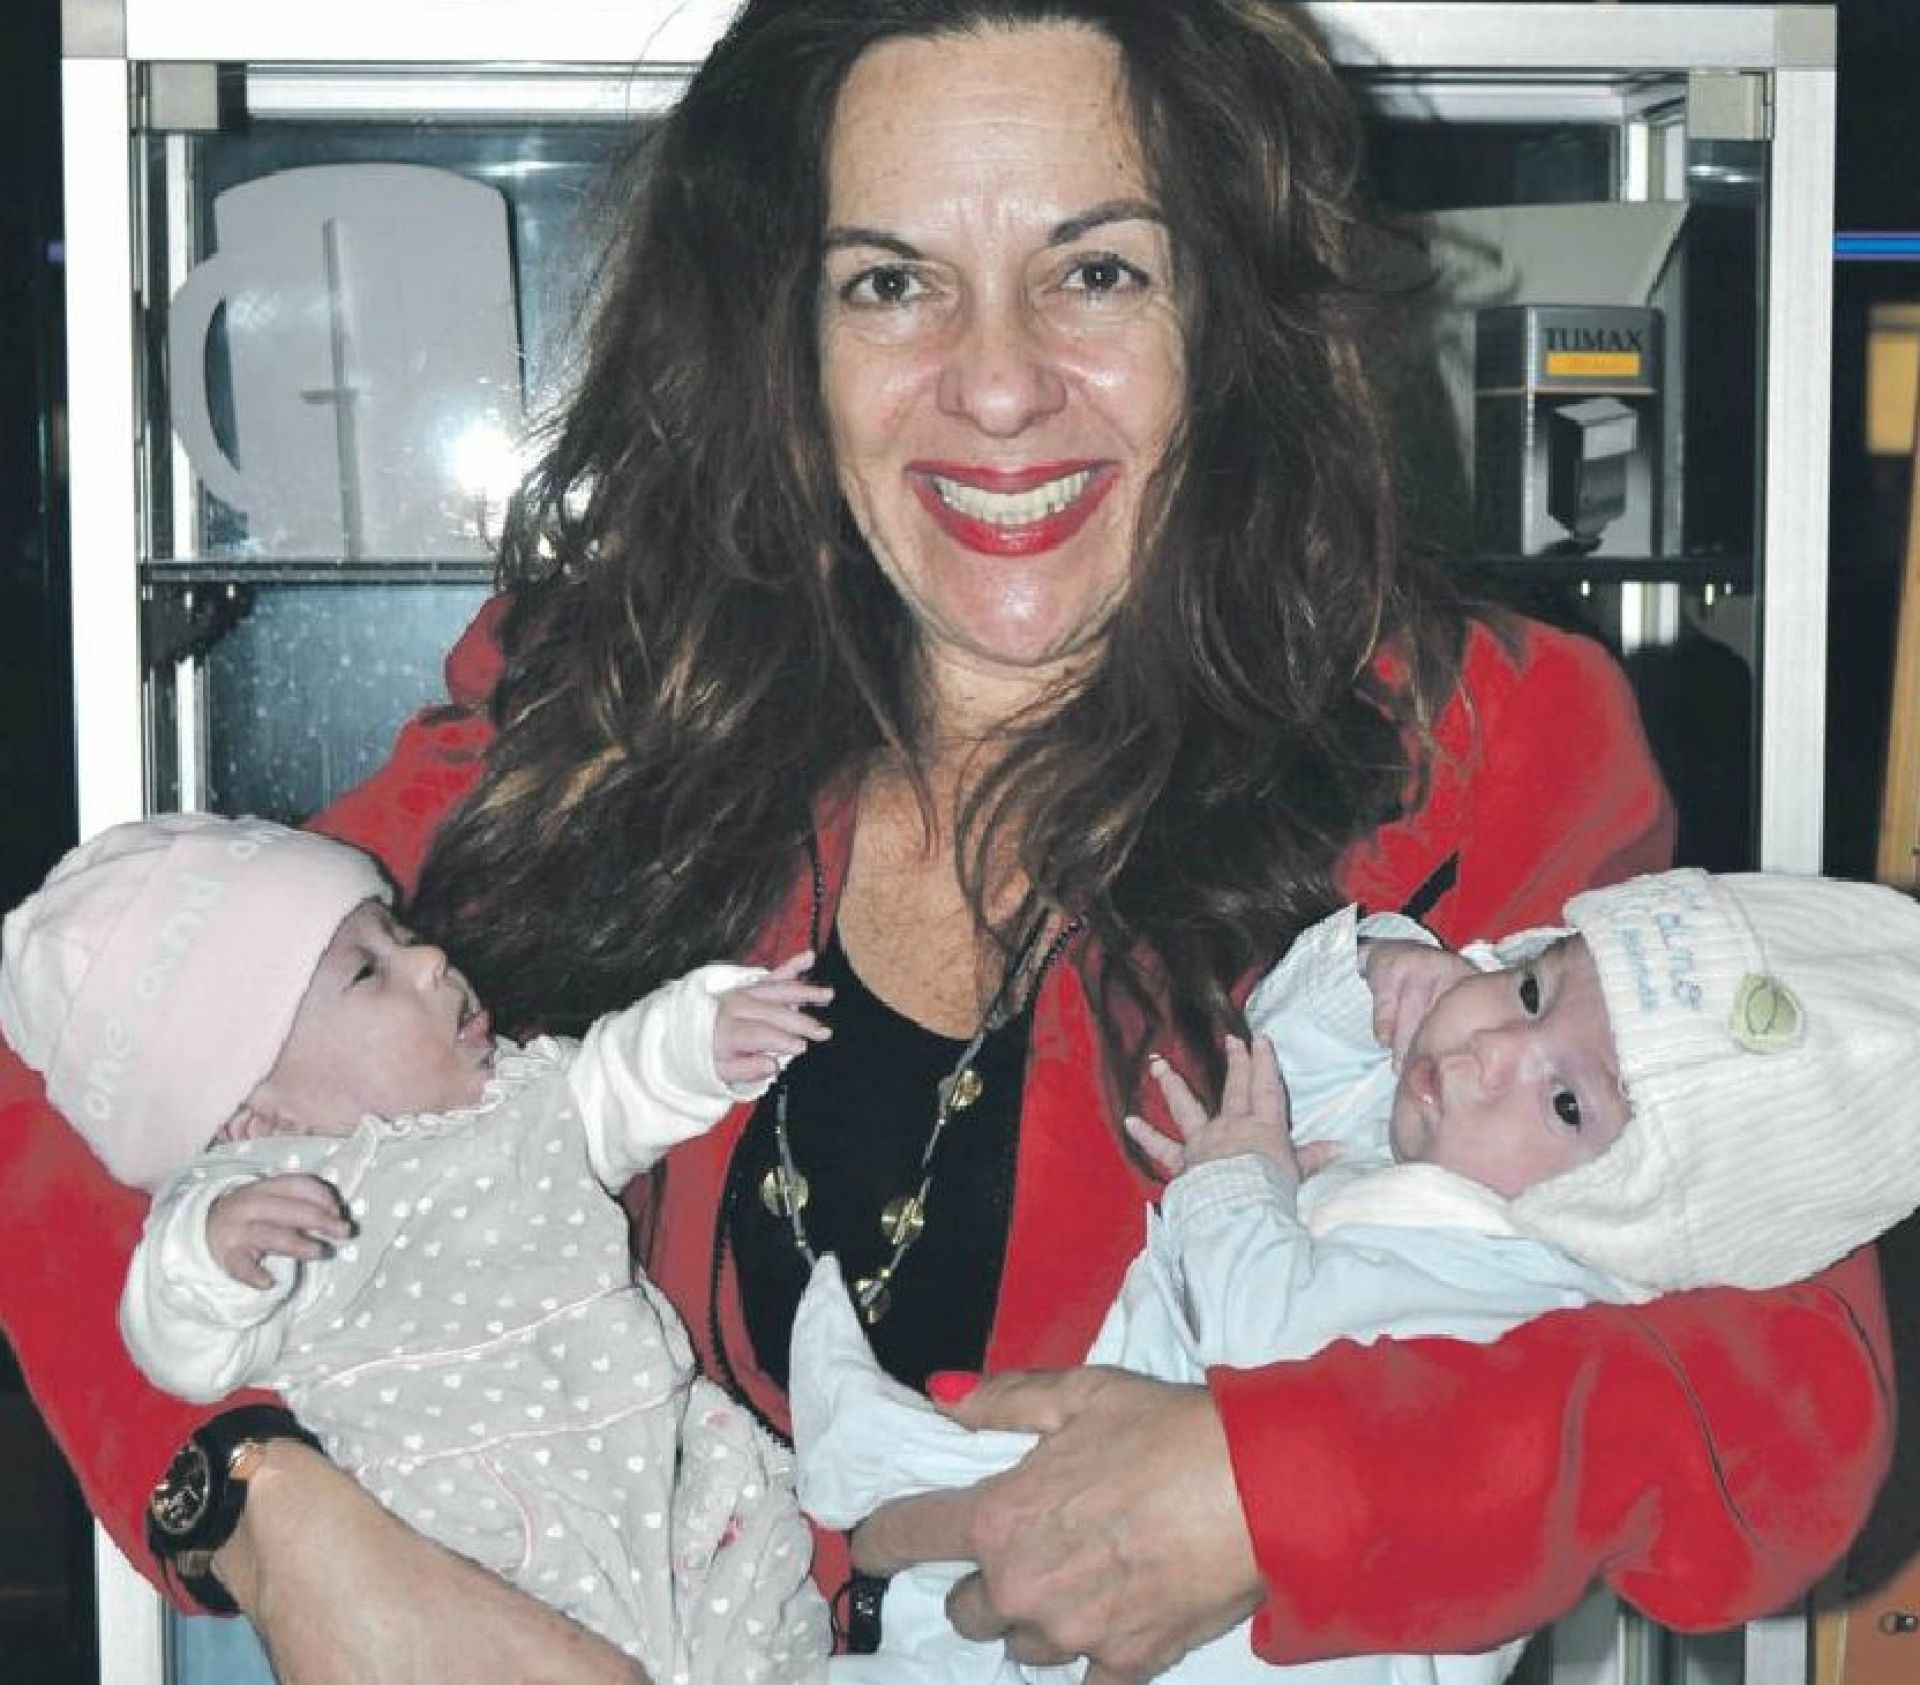 Ταξίδεψε από την Αμερική για να κρατήσει αγκαλιά ένα μωρό. Η ιστορία μιας Ελληνοαμερικανίδας που έγινε μητέρα στα 50 τηs